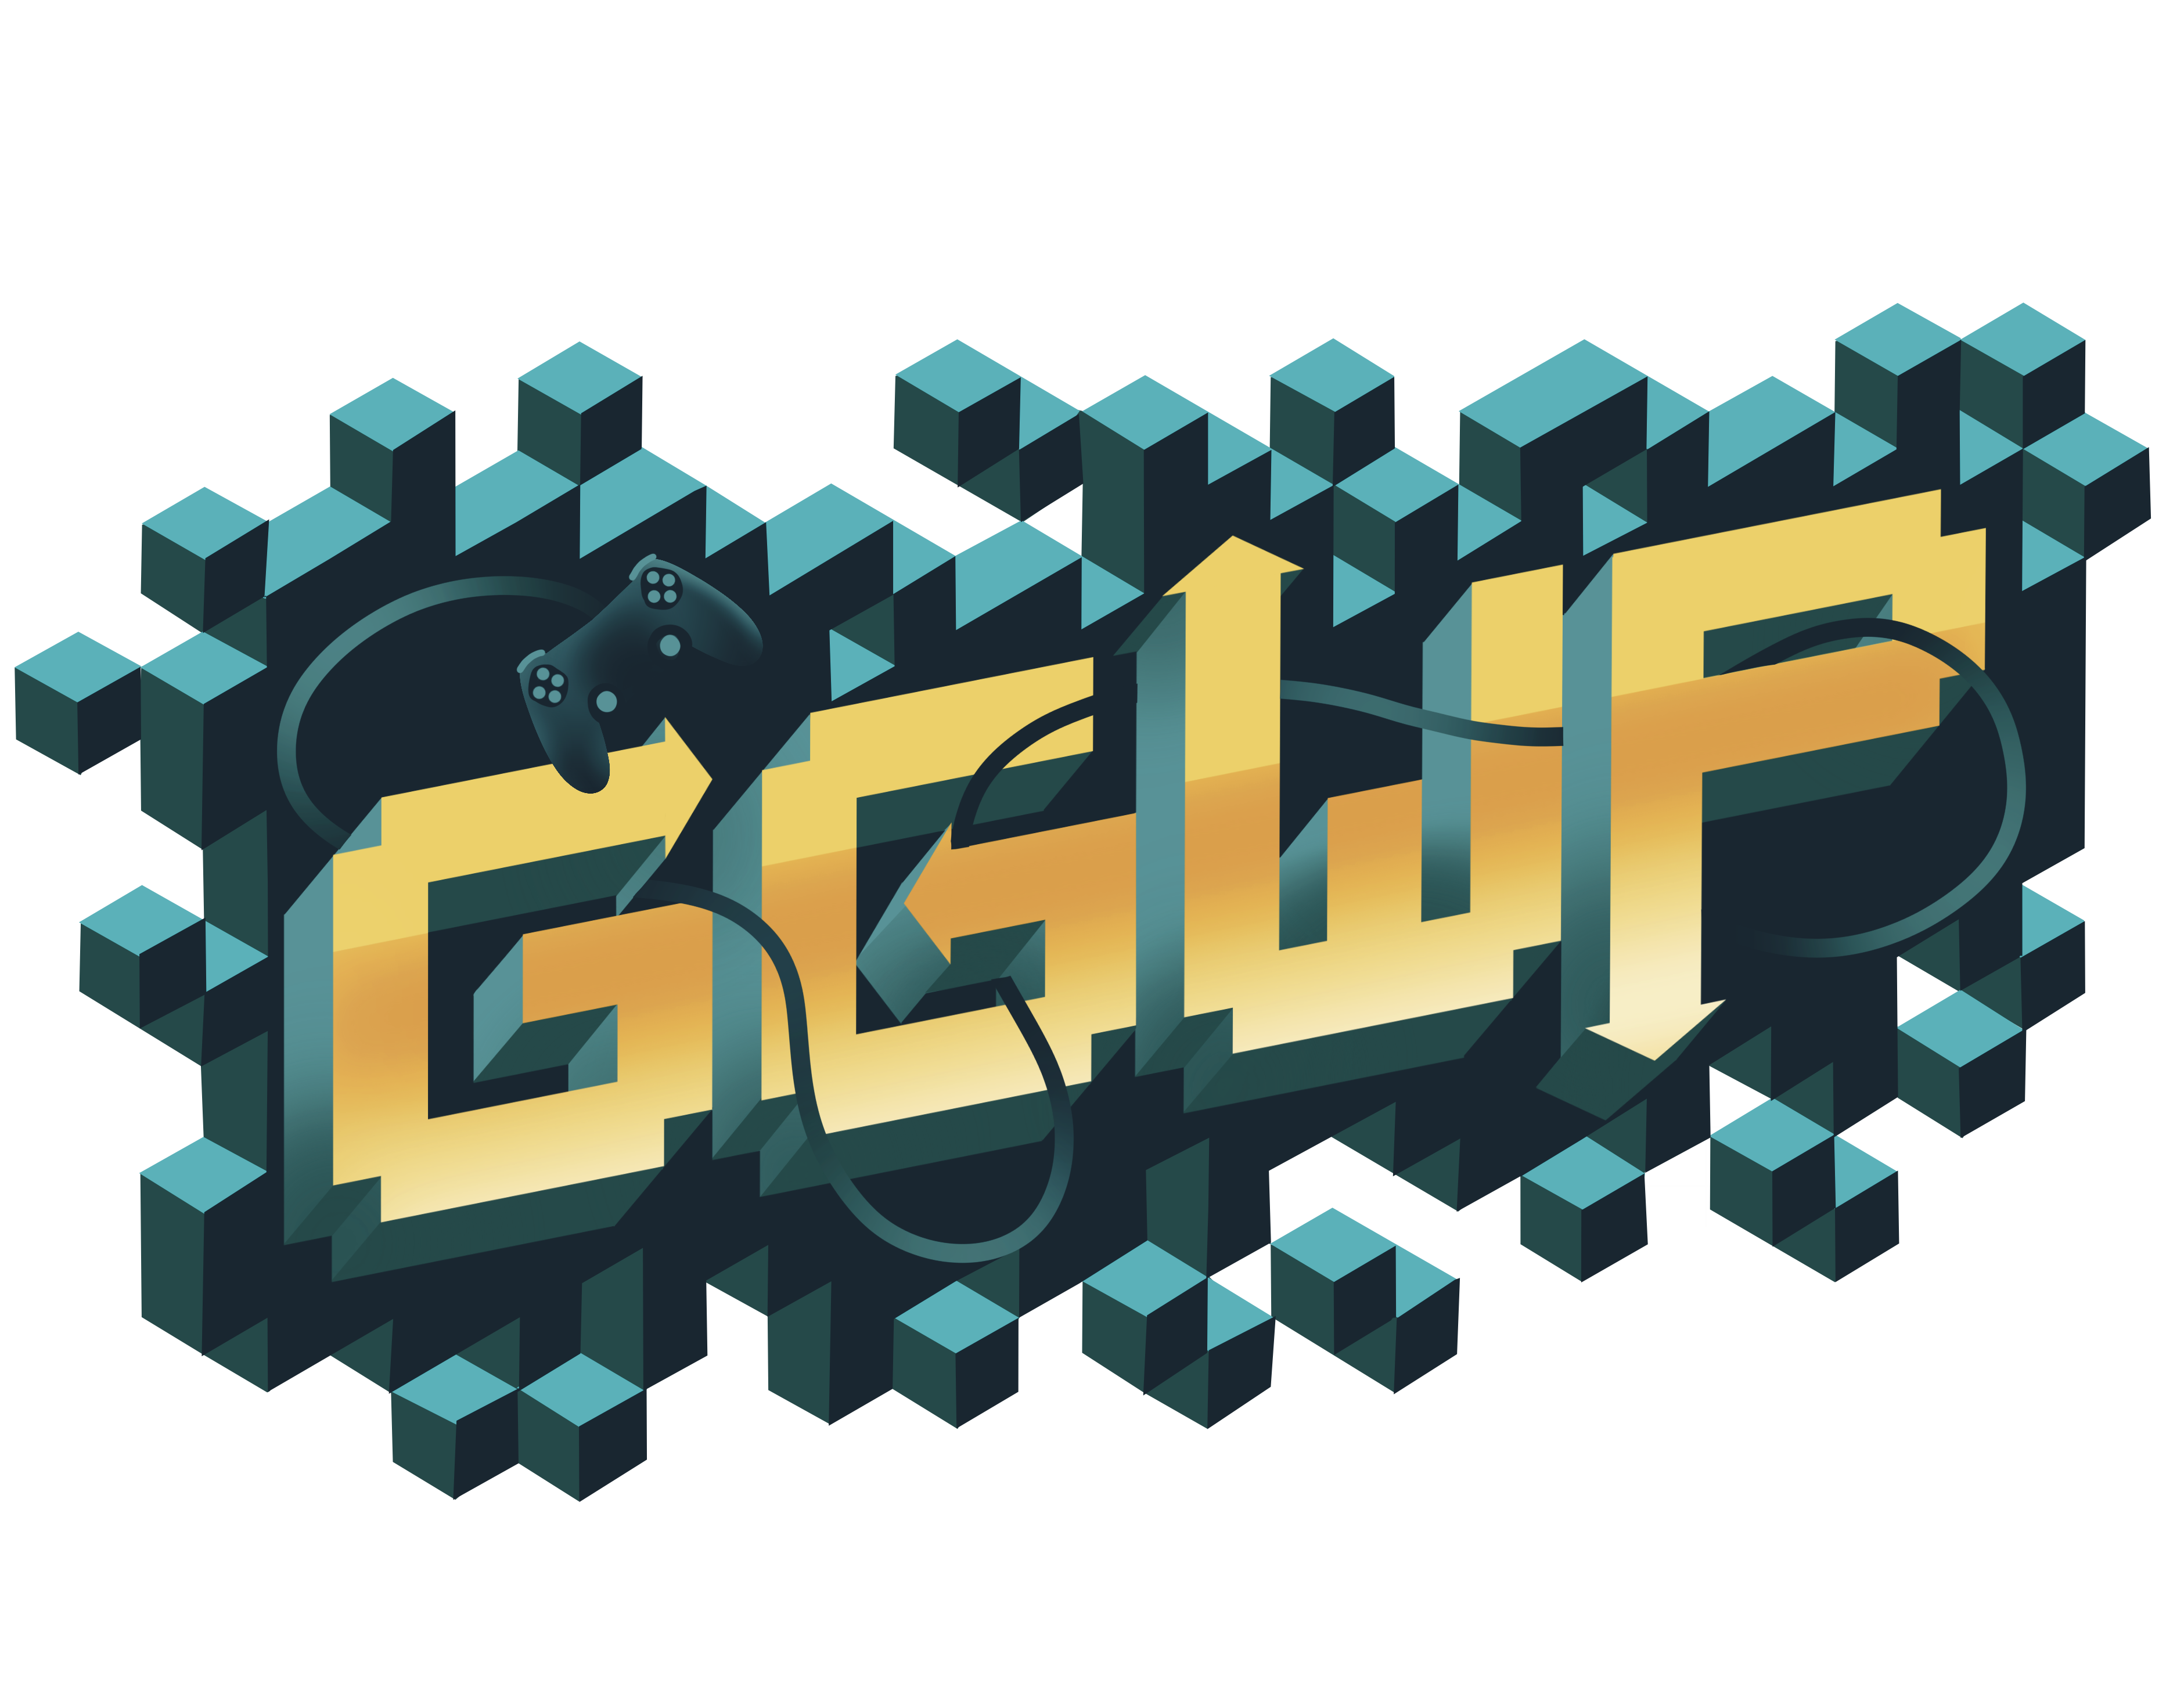 GGWP Logo - a game controller